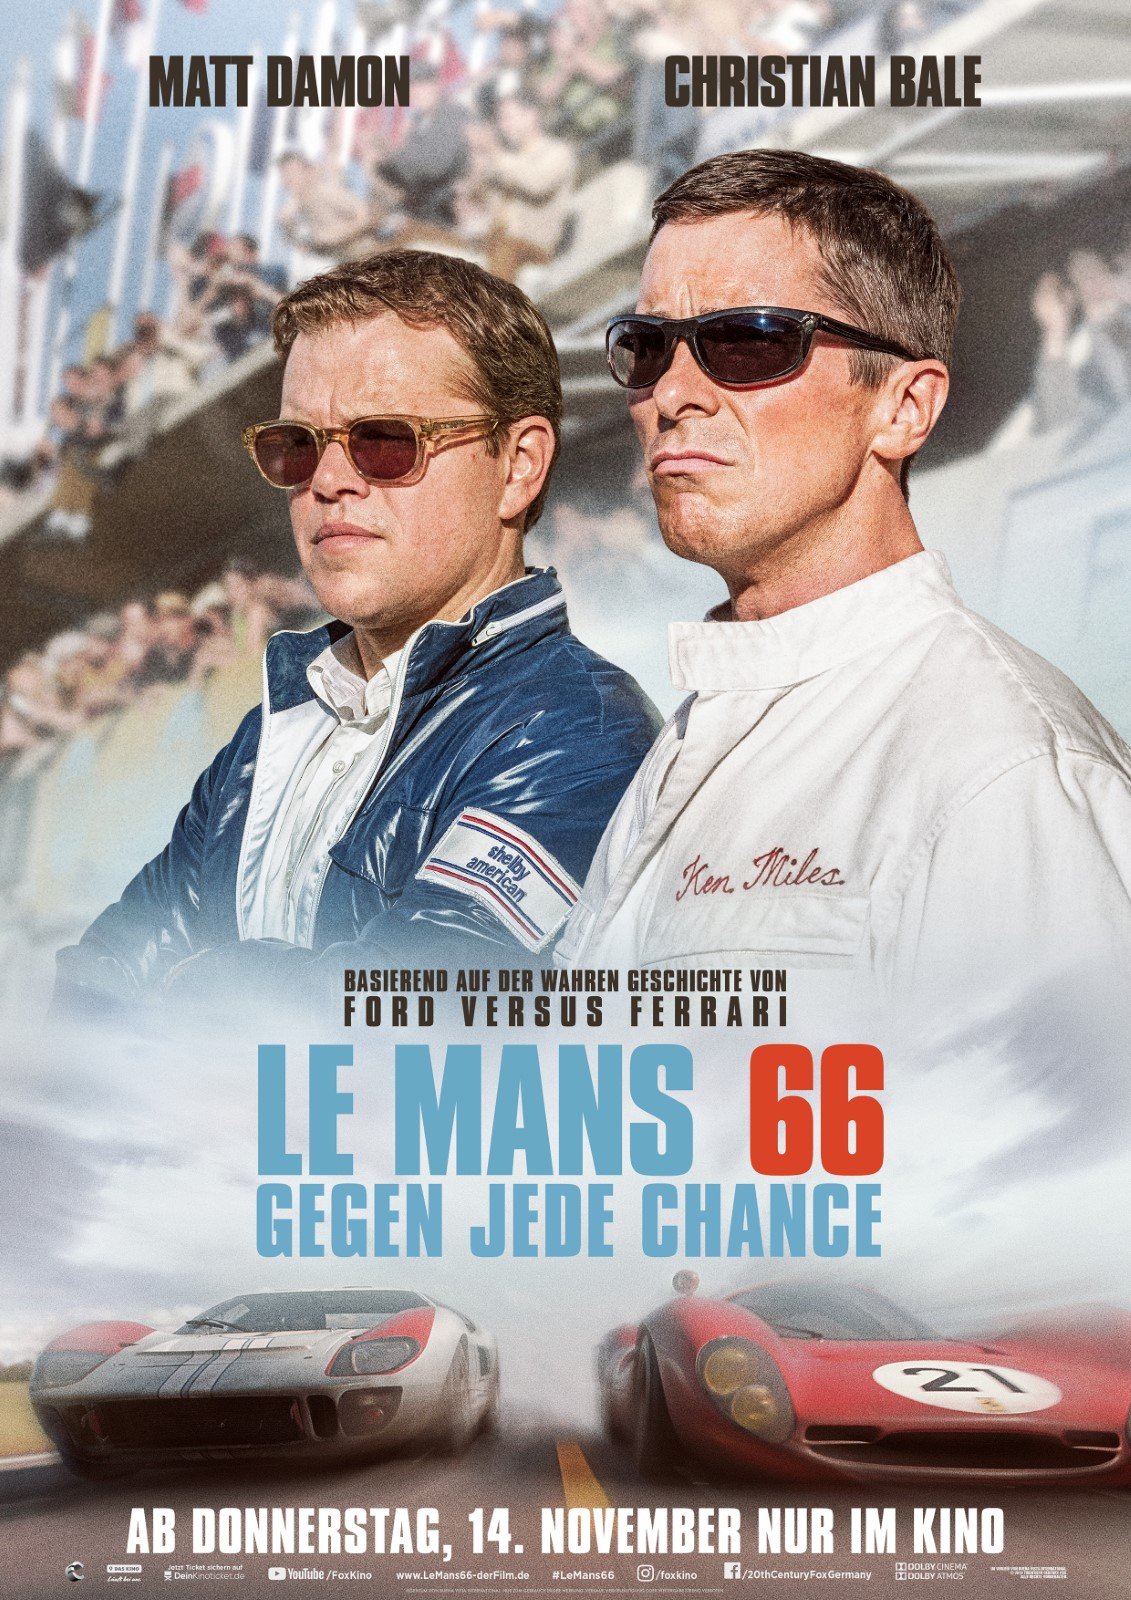 Le Mans 66 - Gegen jede Chance - Film 2019 - FILMSTARTS.de